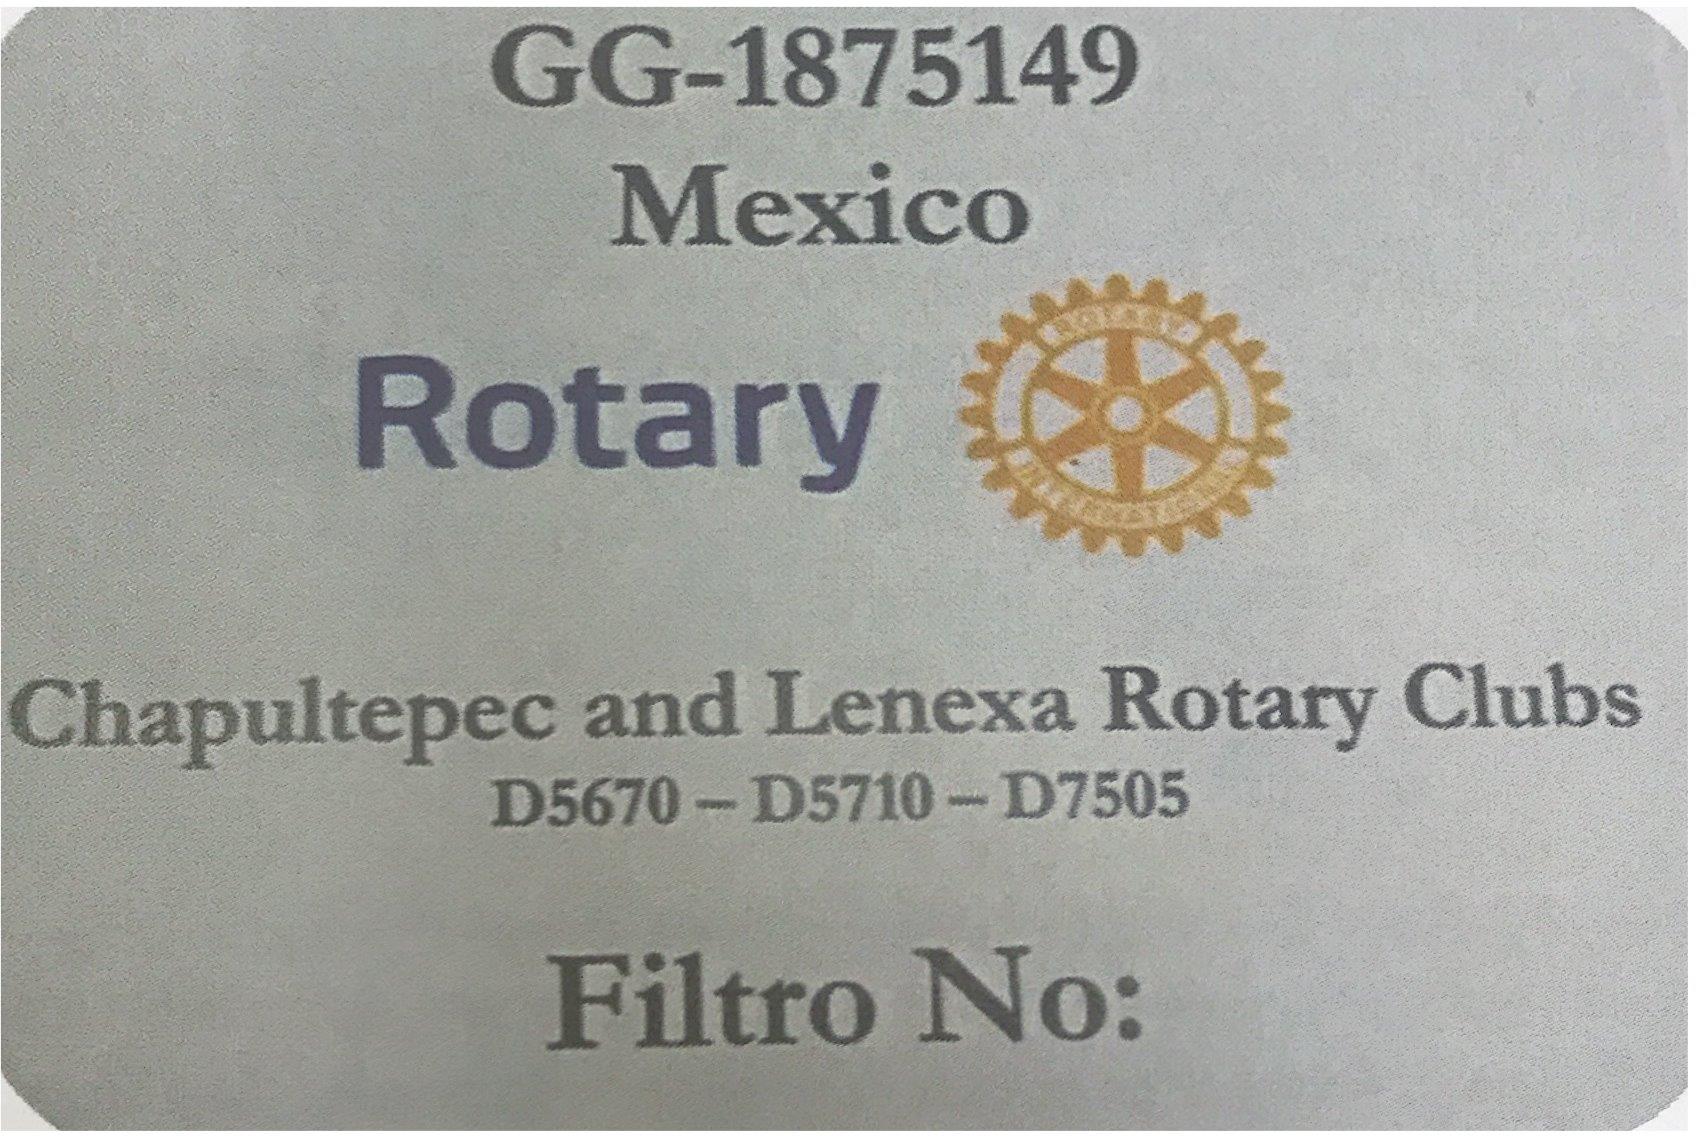 Xochimilco & Mexico City Global Grant | Rotary Club of Lenexa